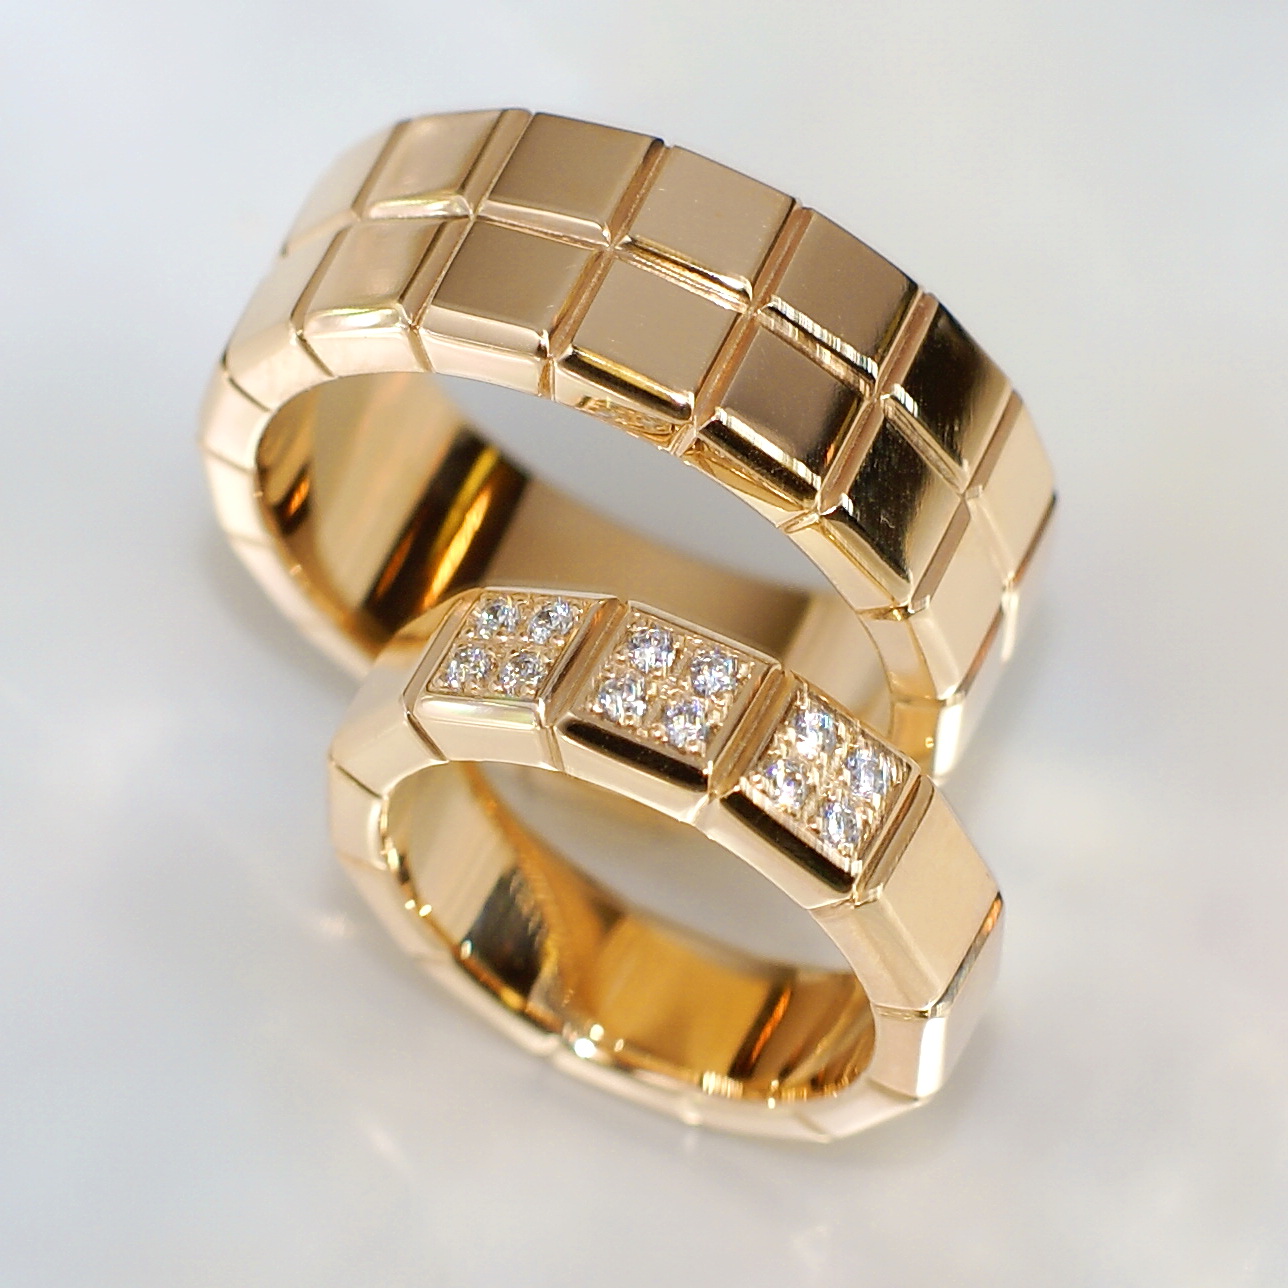 Эксклюзивные обручальные кольца Кубики с бриллиантами (Вес пары: 20 гр.)